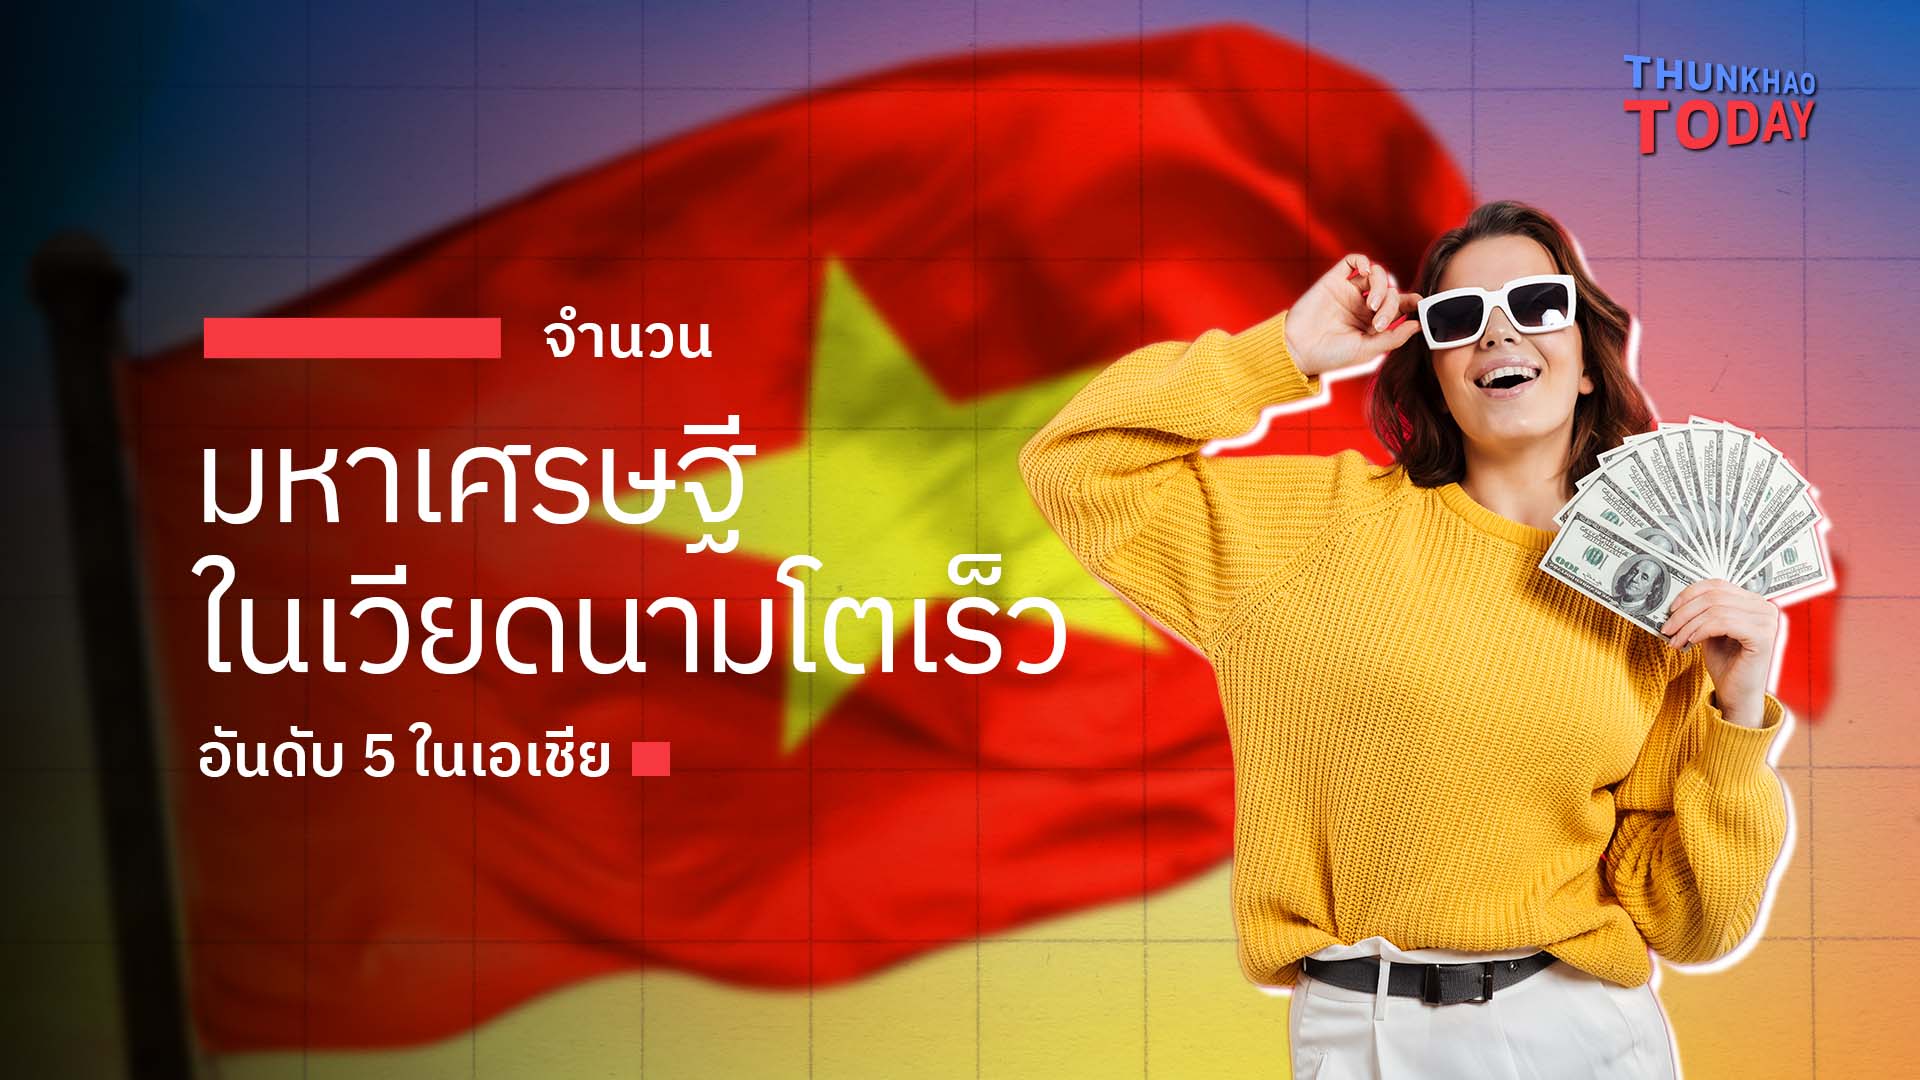 จำนวนมหาเศรษฐีในเวียดนาม โตเร็วอันดับ 5 ในเอเชีย